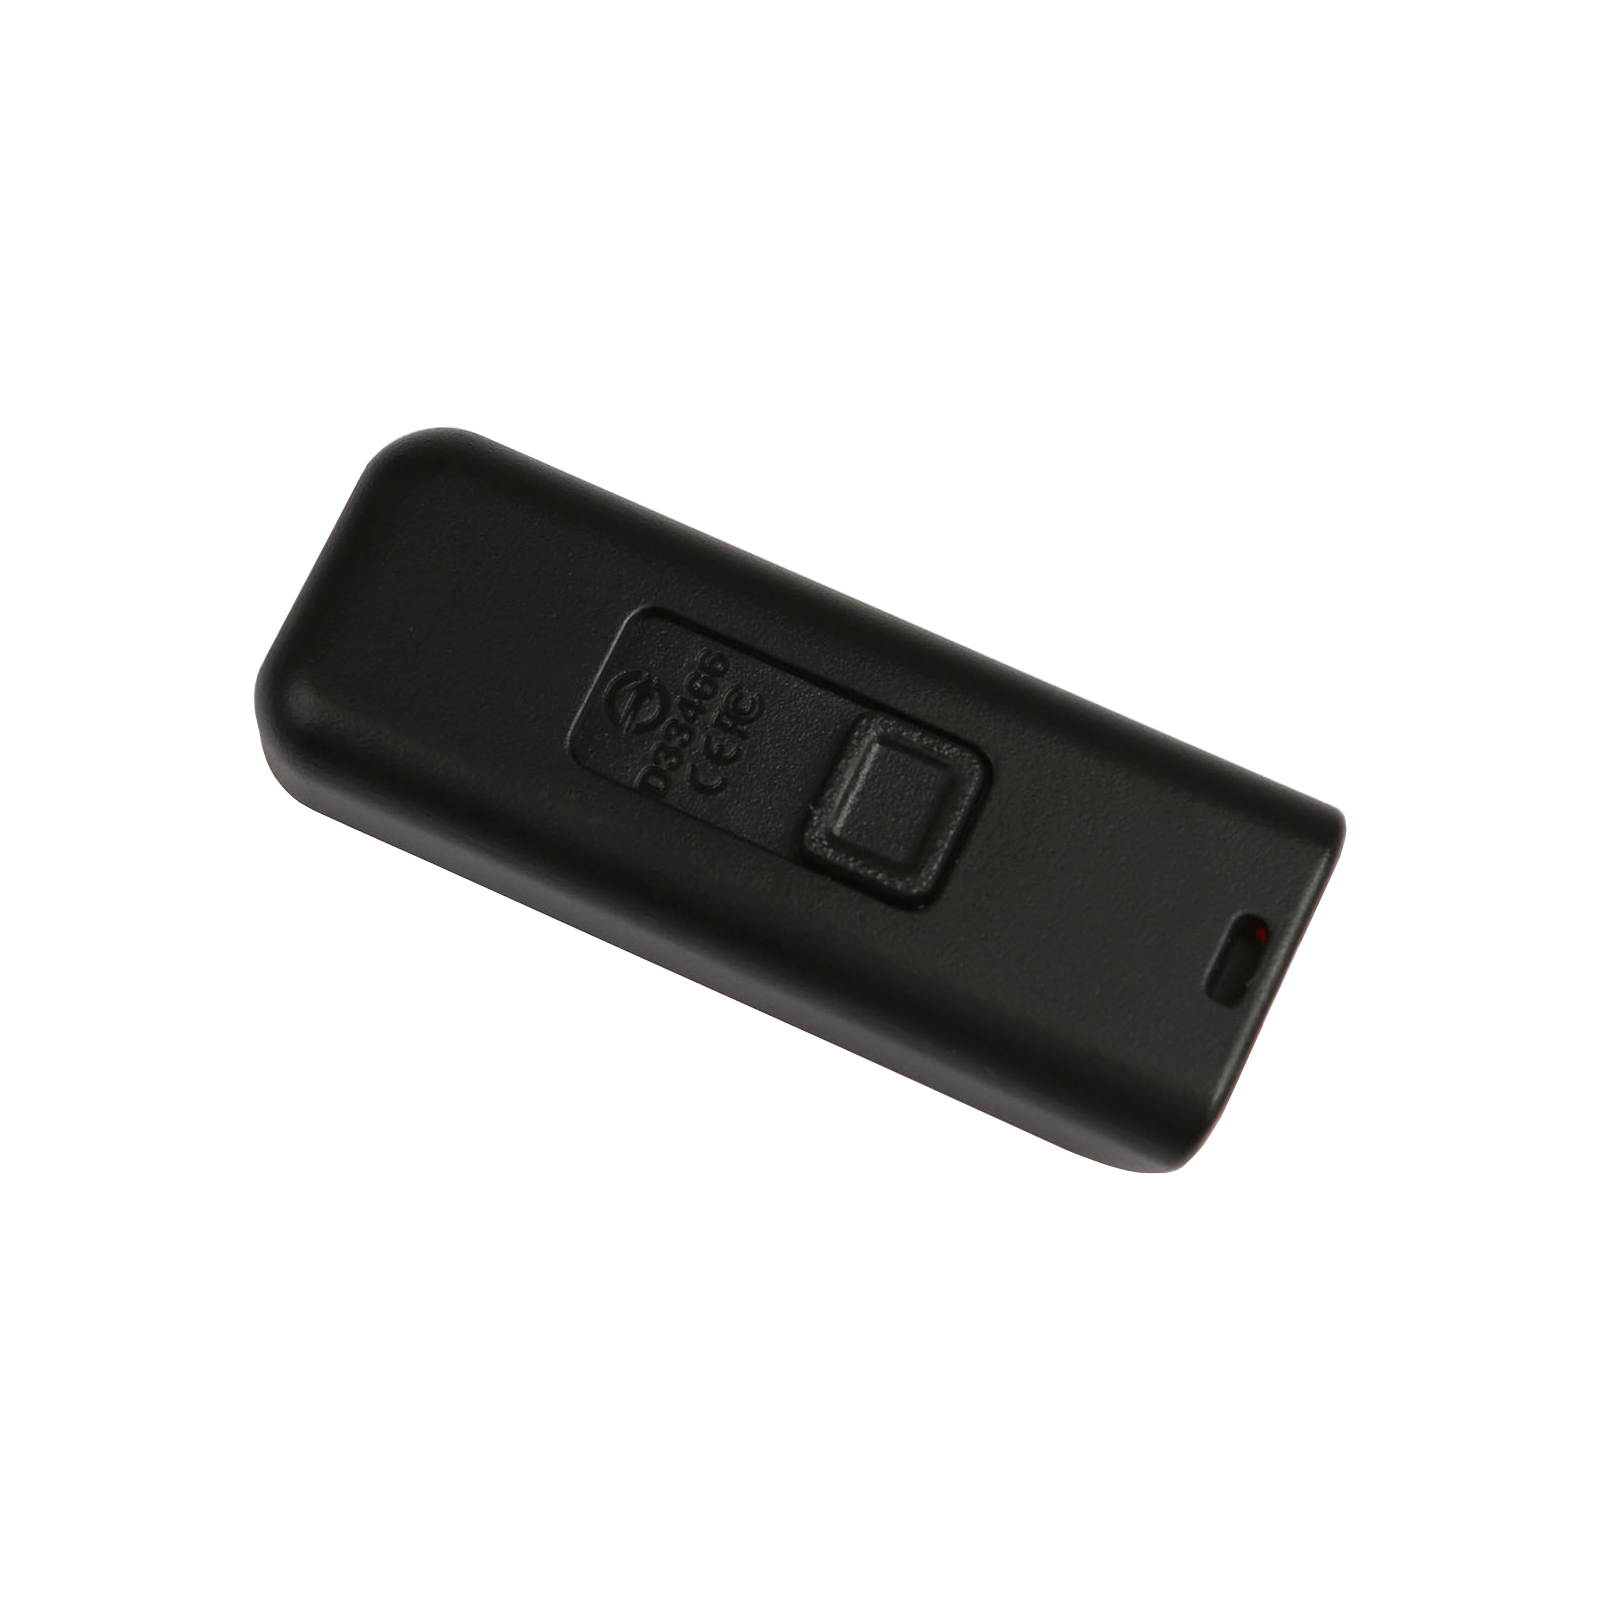 USB флеш накопитель Apacer 16GB AH334 pink USB 2.0 (AP16GAH334P-1) изображение 4